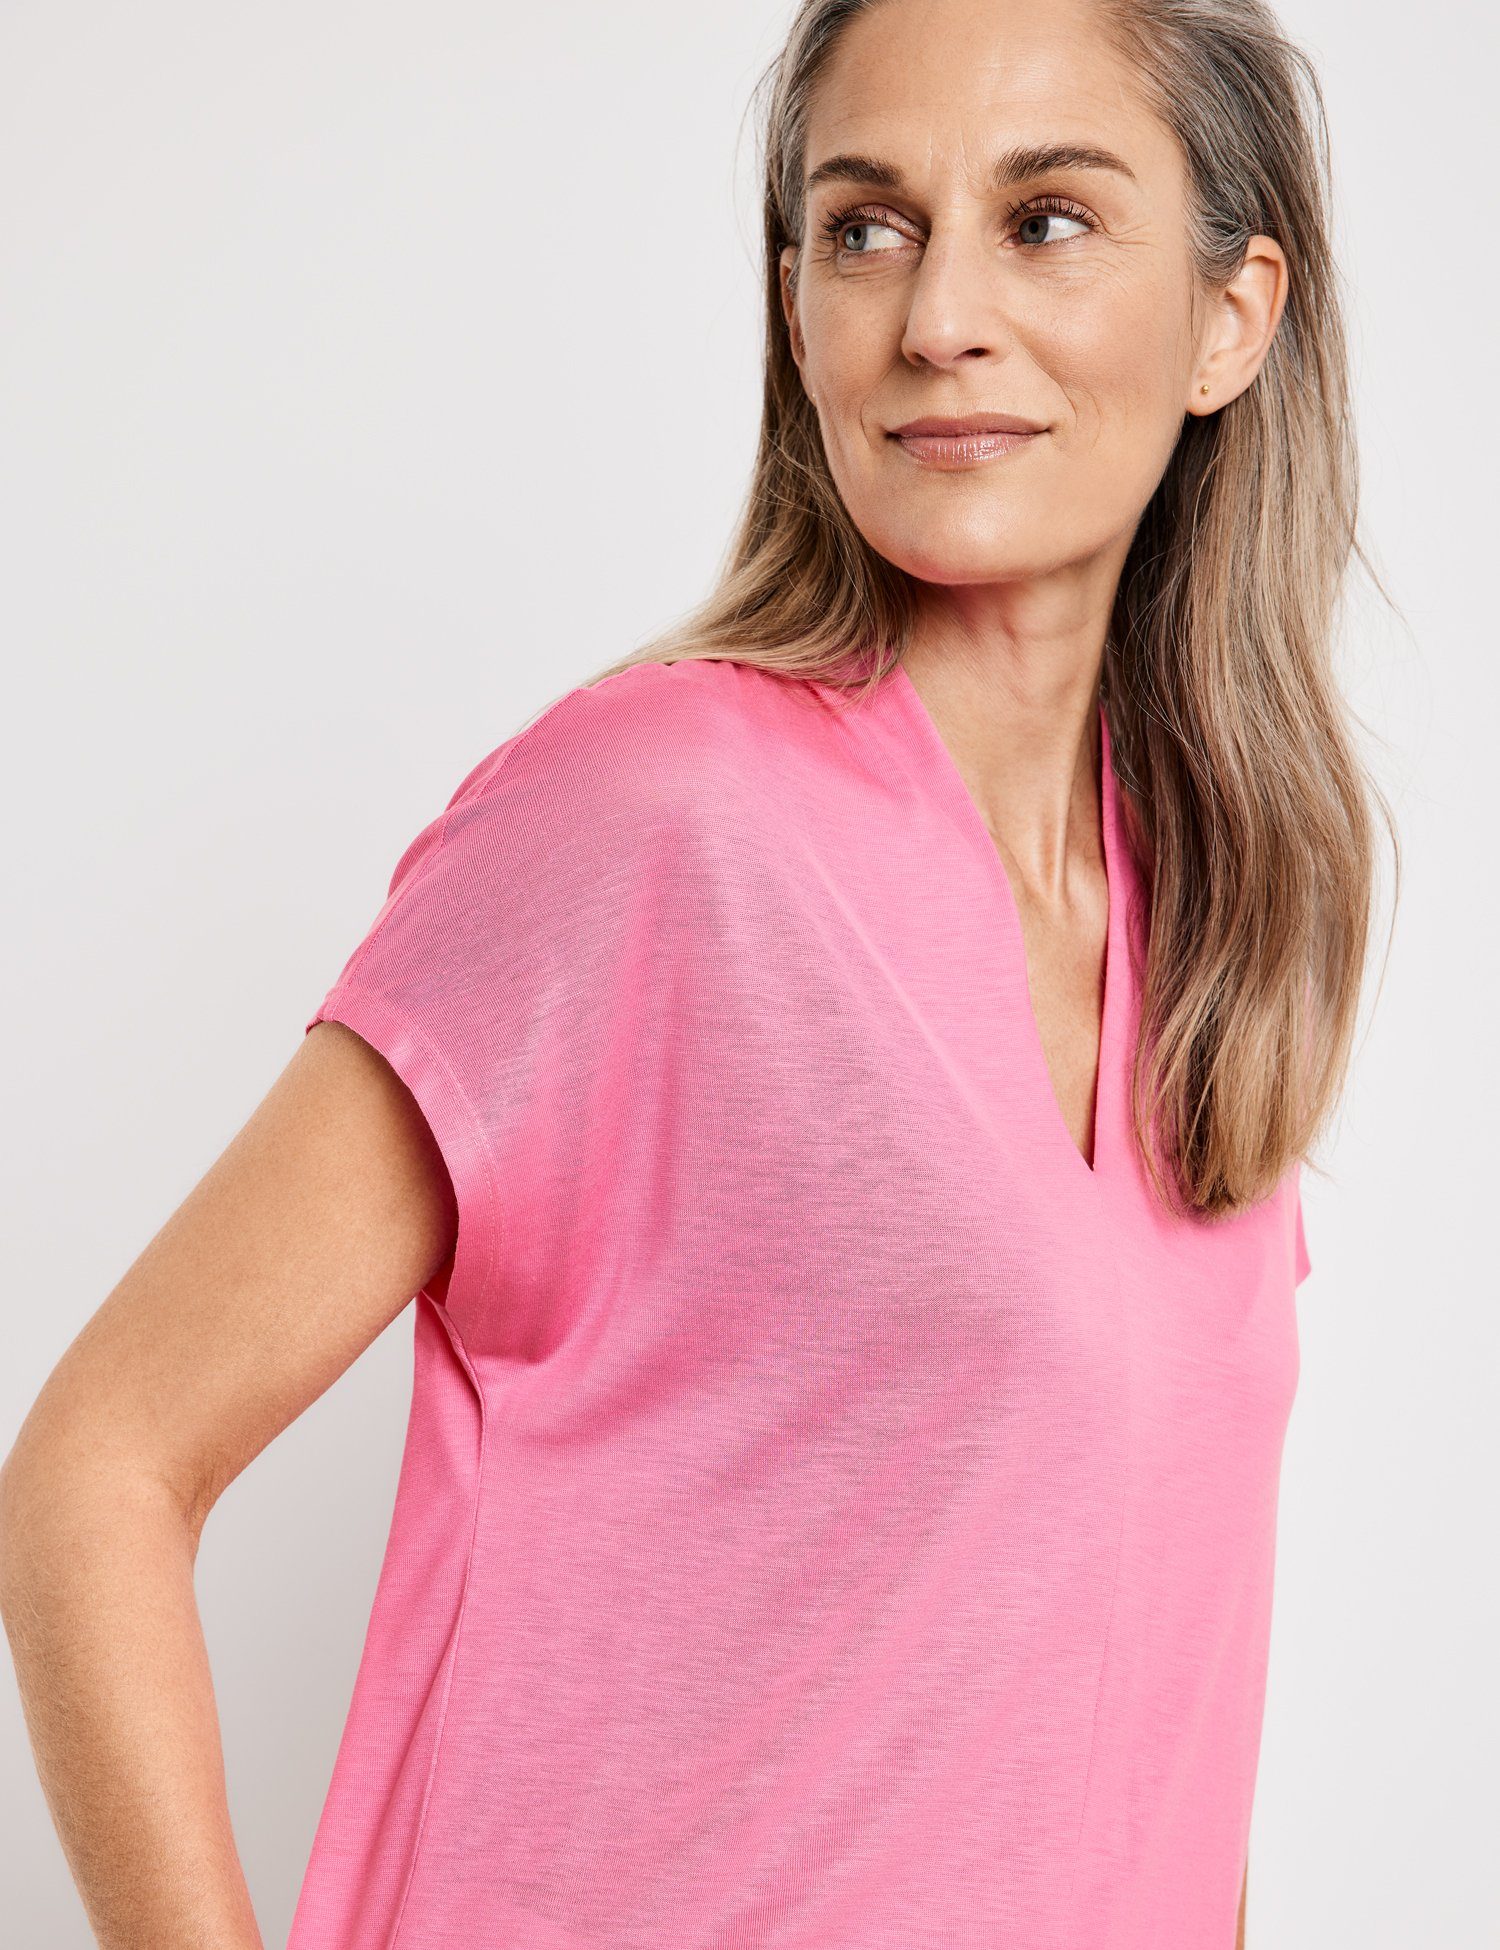 GERRY WEBER Kurzarmshirt Kurzarmshirt mit überschnittenen Soft Schultern Pink